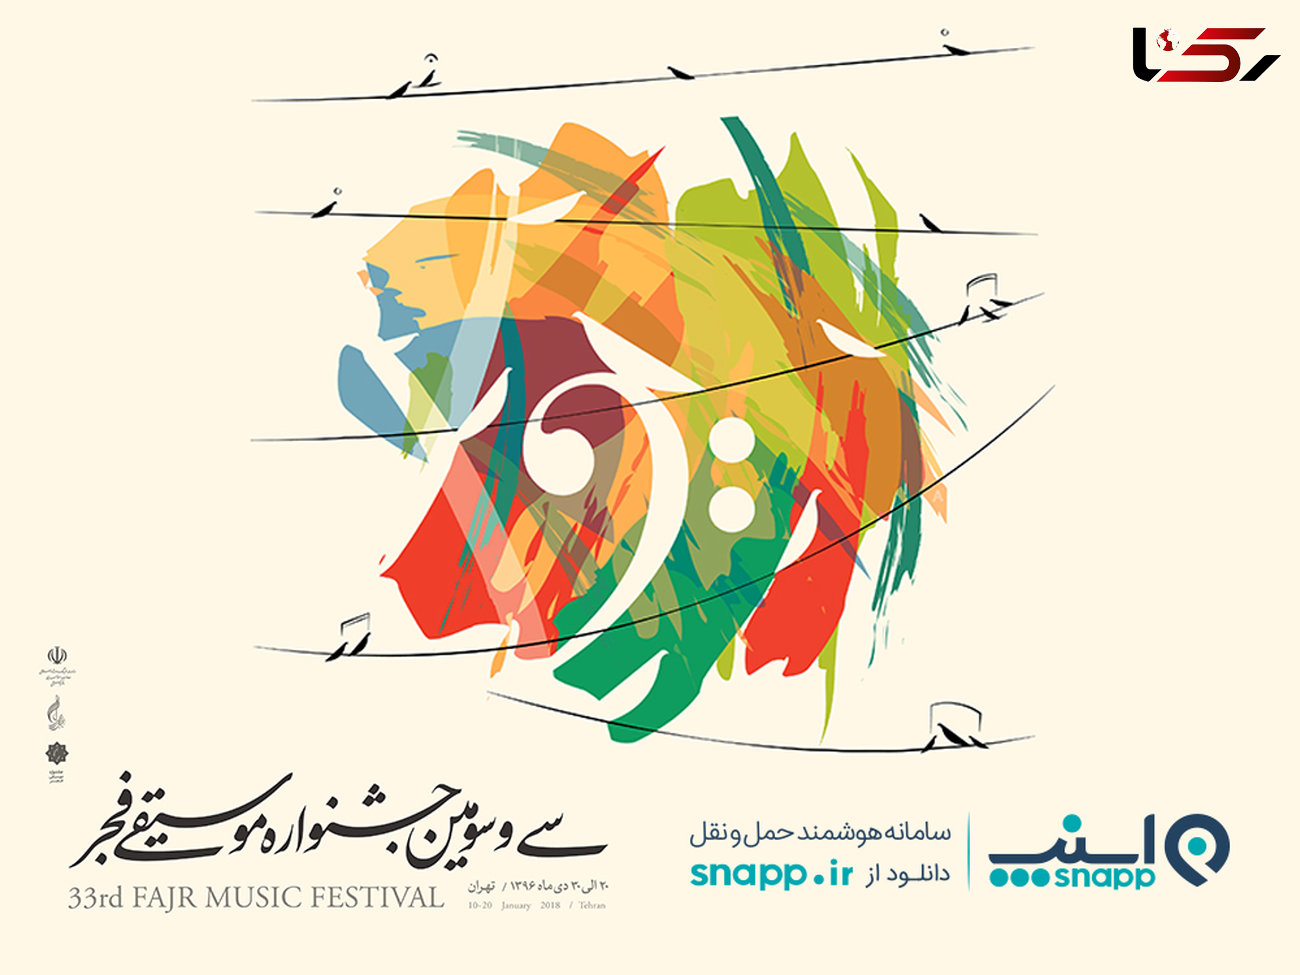  با اسنپ ارزان و راحت به جشنواره موسیقی فجر بروید